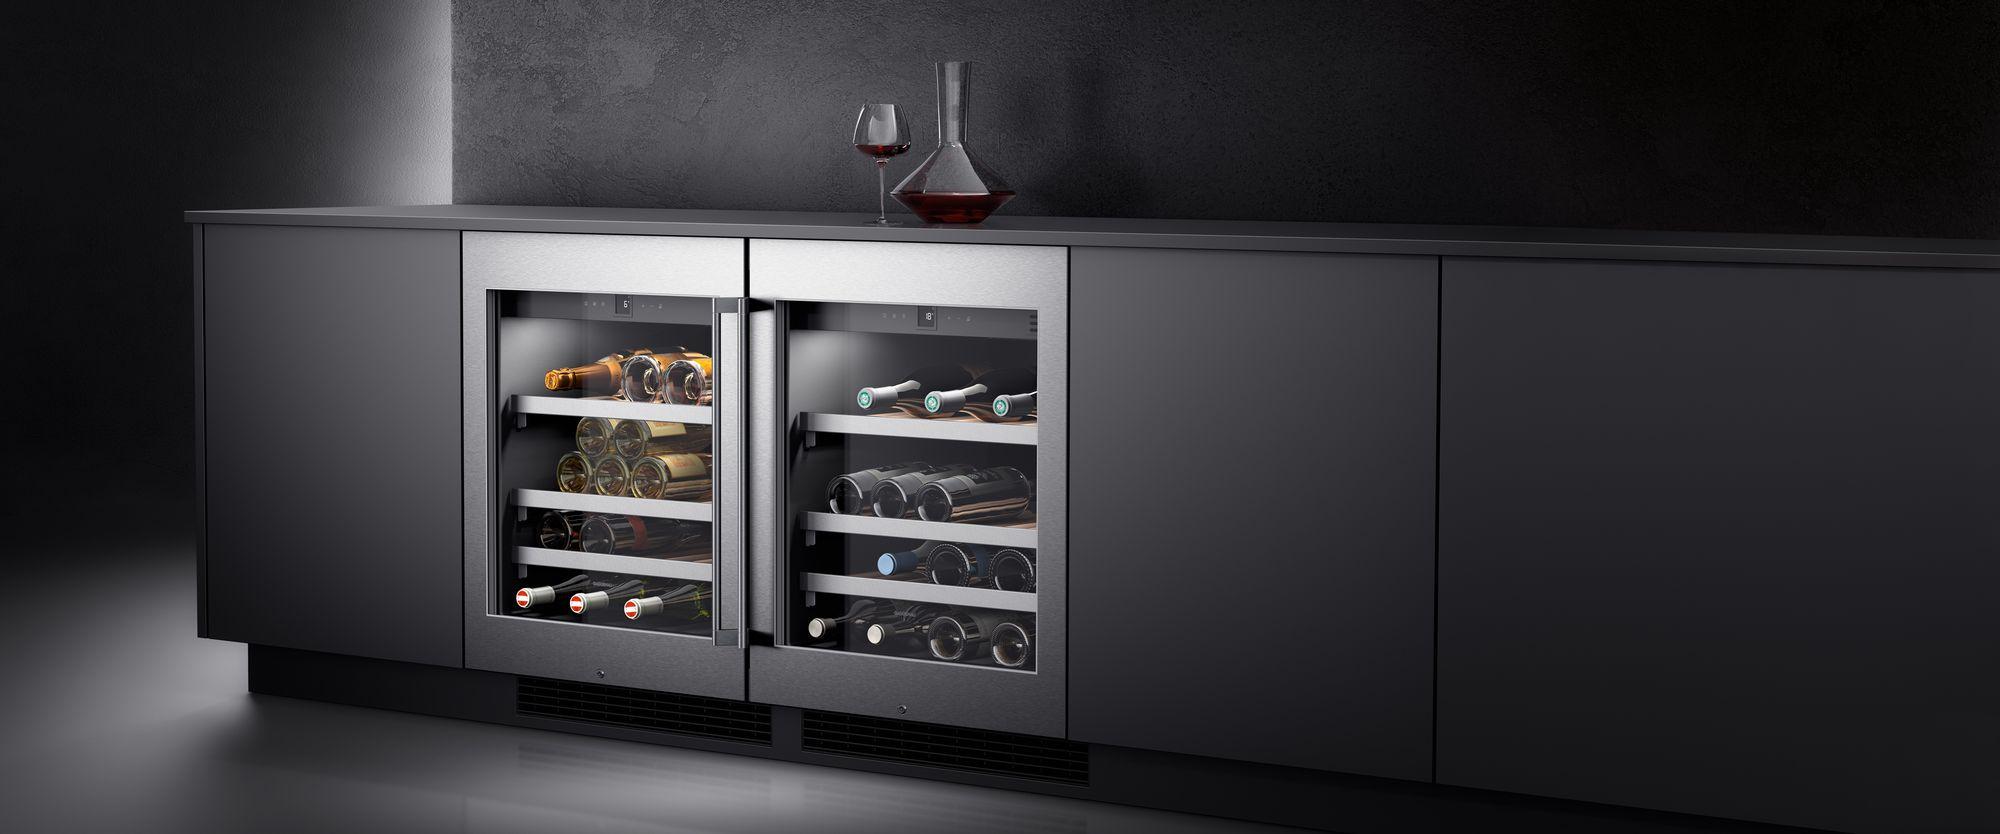 Gaggenau Wine Cabinets by FCI London